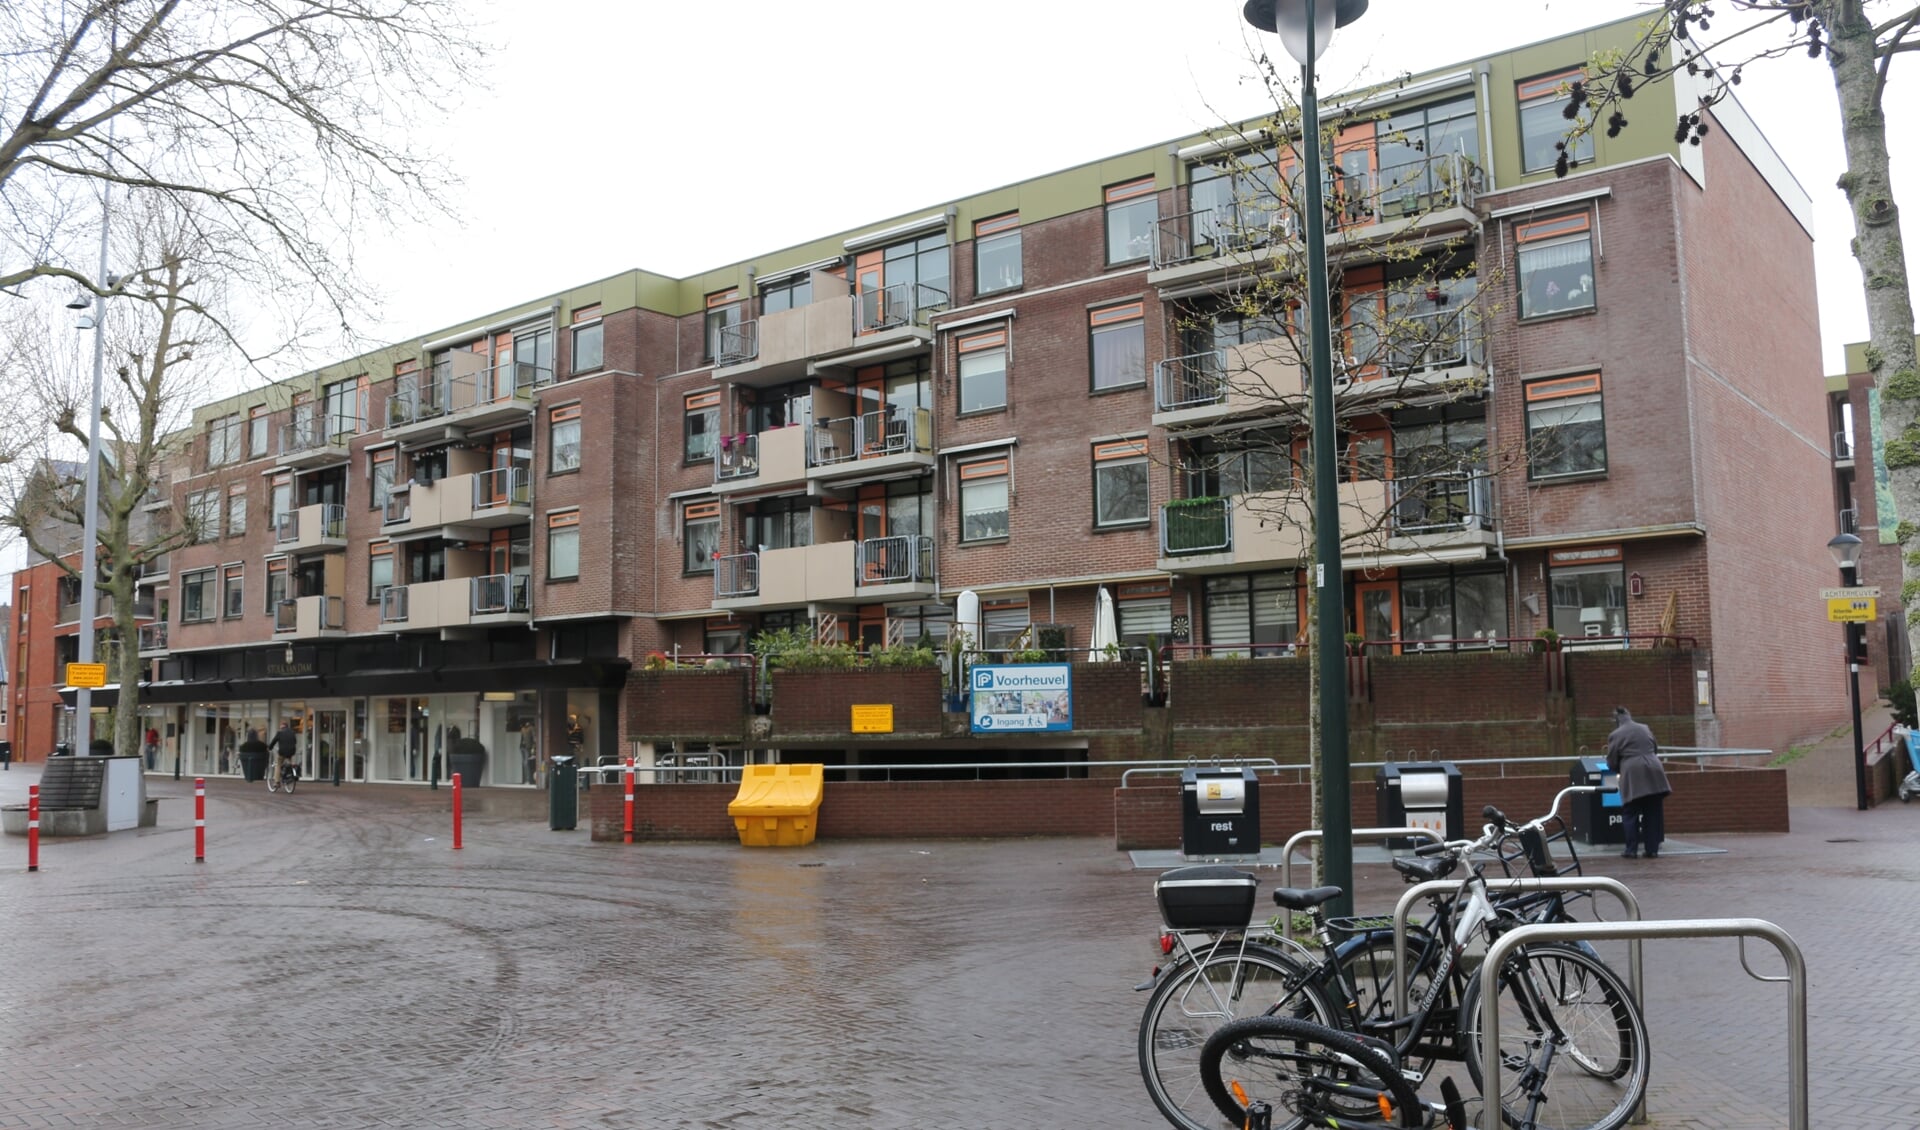 Het appartementencomplex heeft uitzicht op De Markt. Een aantal bewoners noemt het 'de duiventil.'